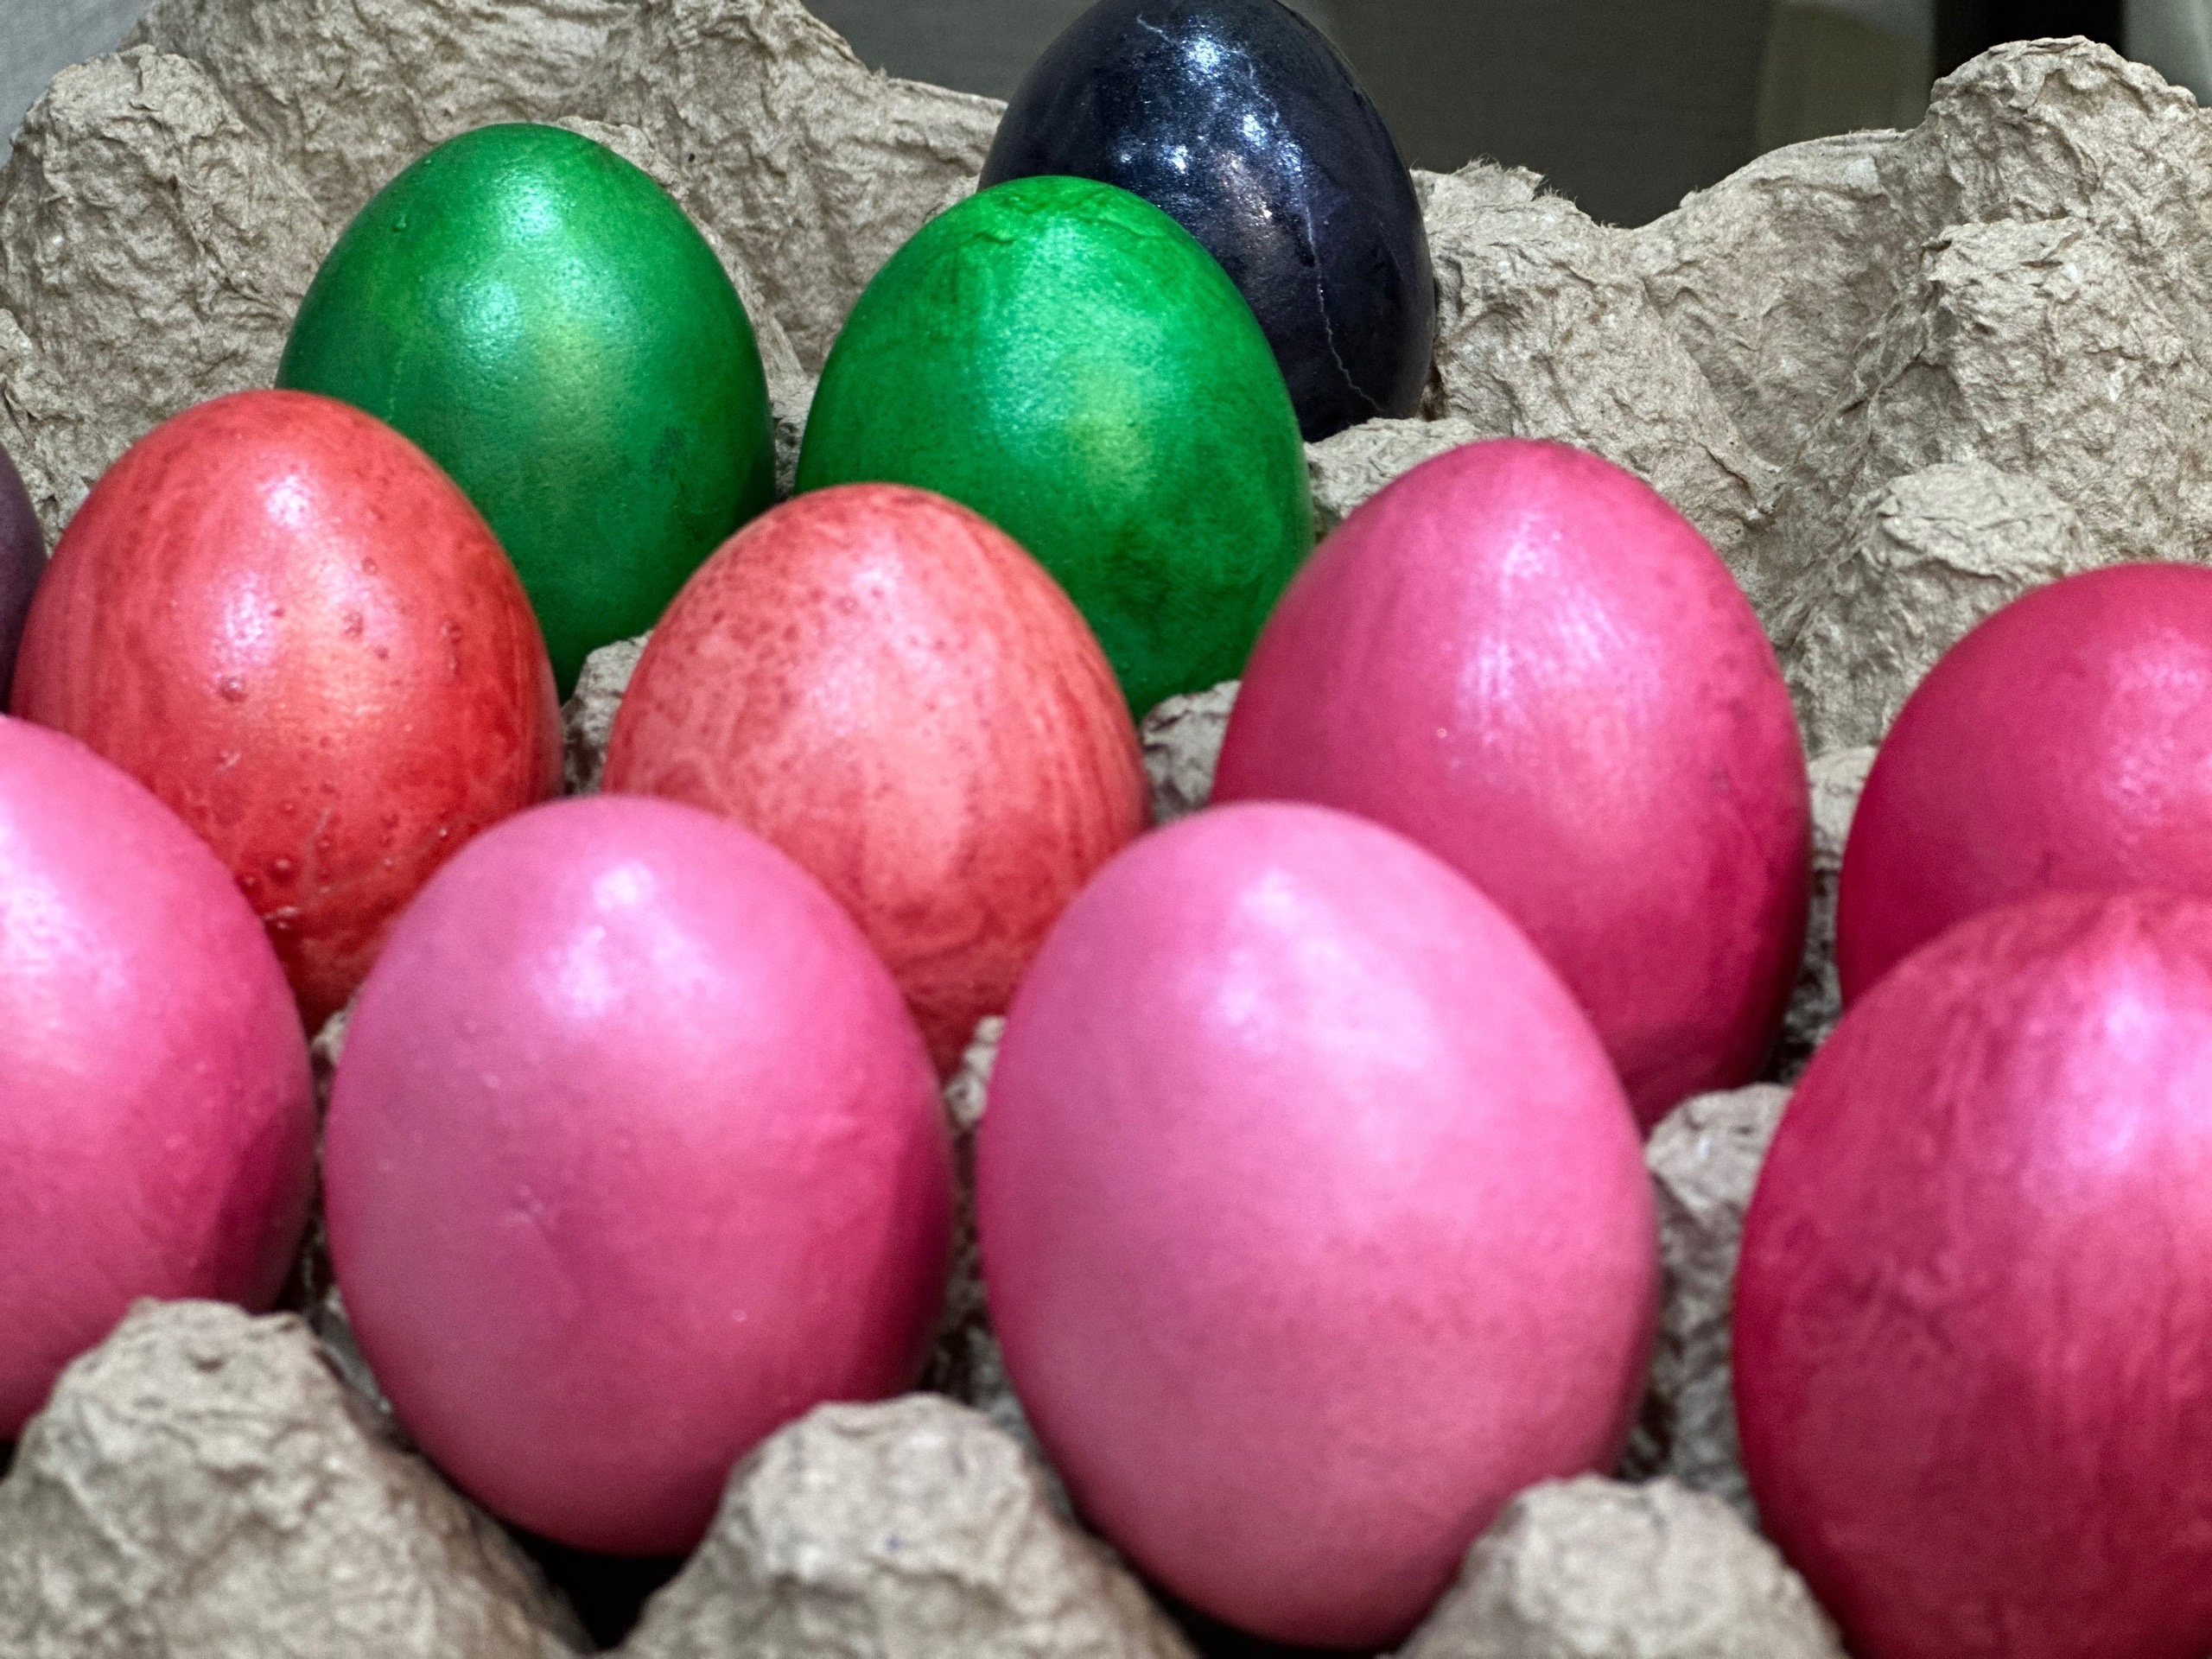 Бабушки в деревне красят яйца именно так: налейте в кастрюлю эту ядрёную жидкость — очень красиво